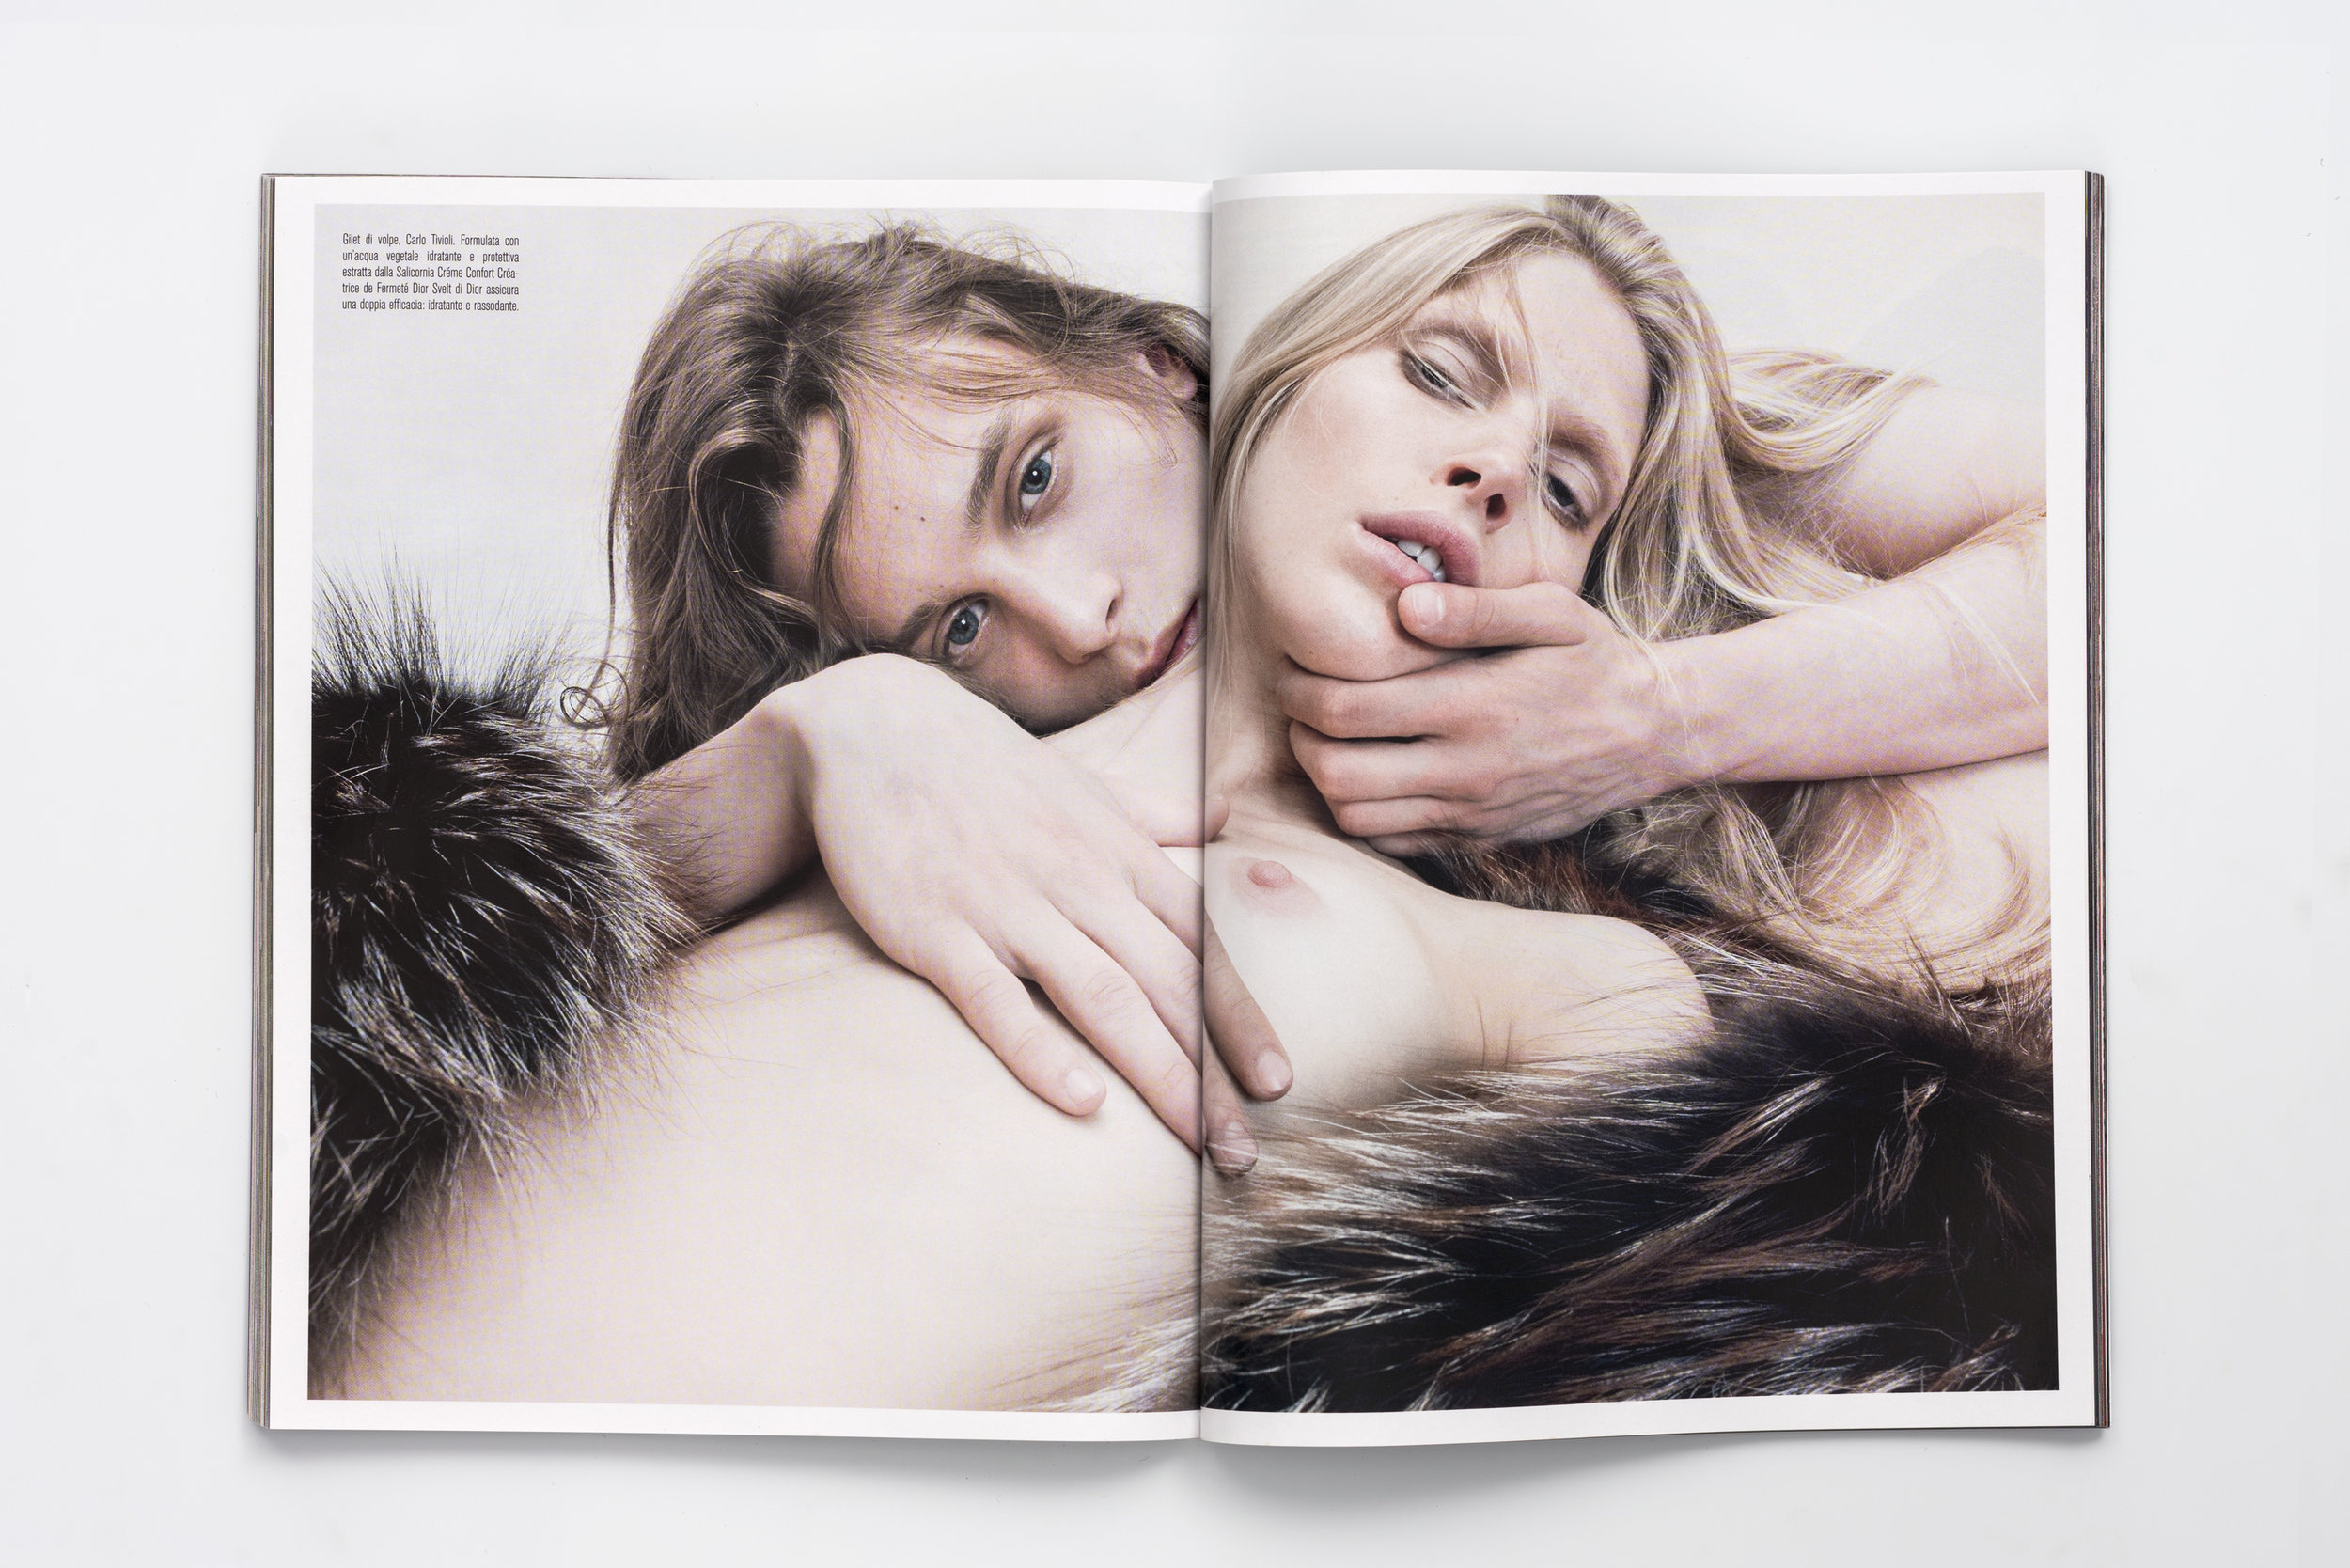 Iselin Steiro_Steven Meisel_Vogue Italia_Venus in Furs_4.jpg